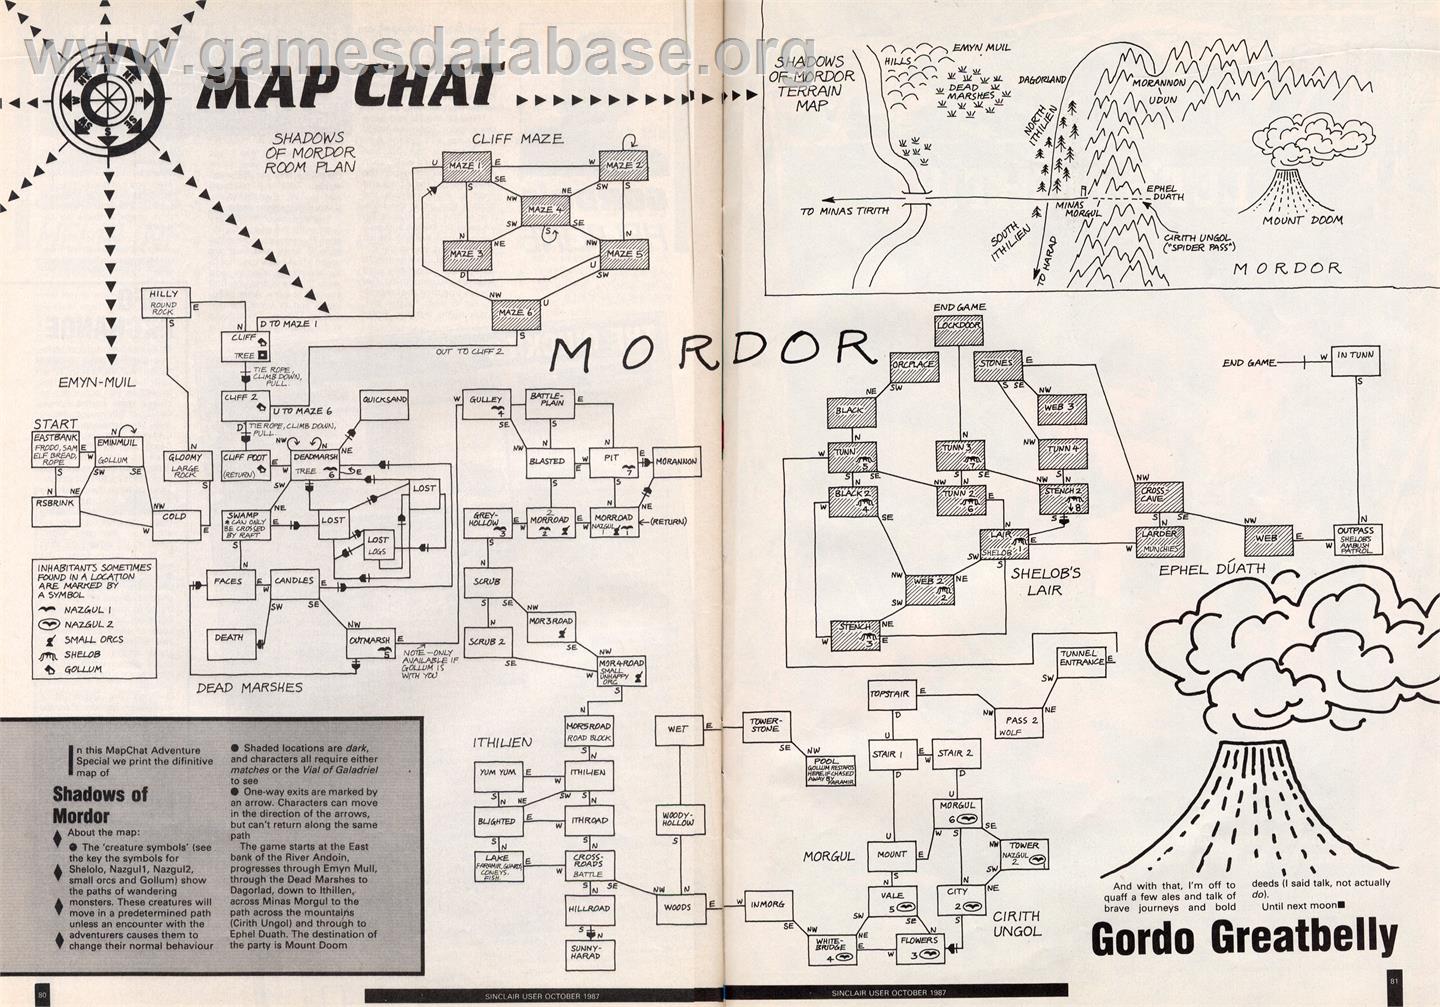 The Shadows of Mordor - Commodore 64 - Artwork - Map